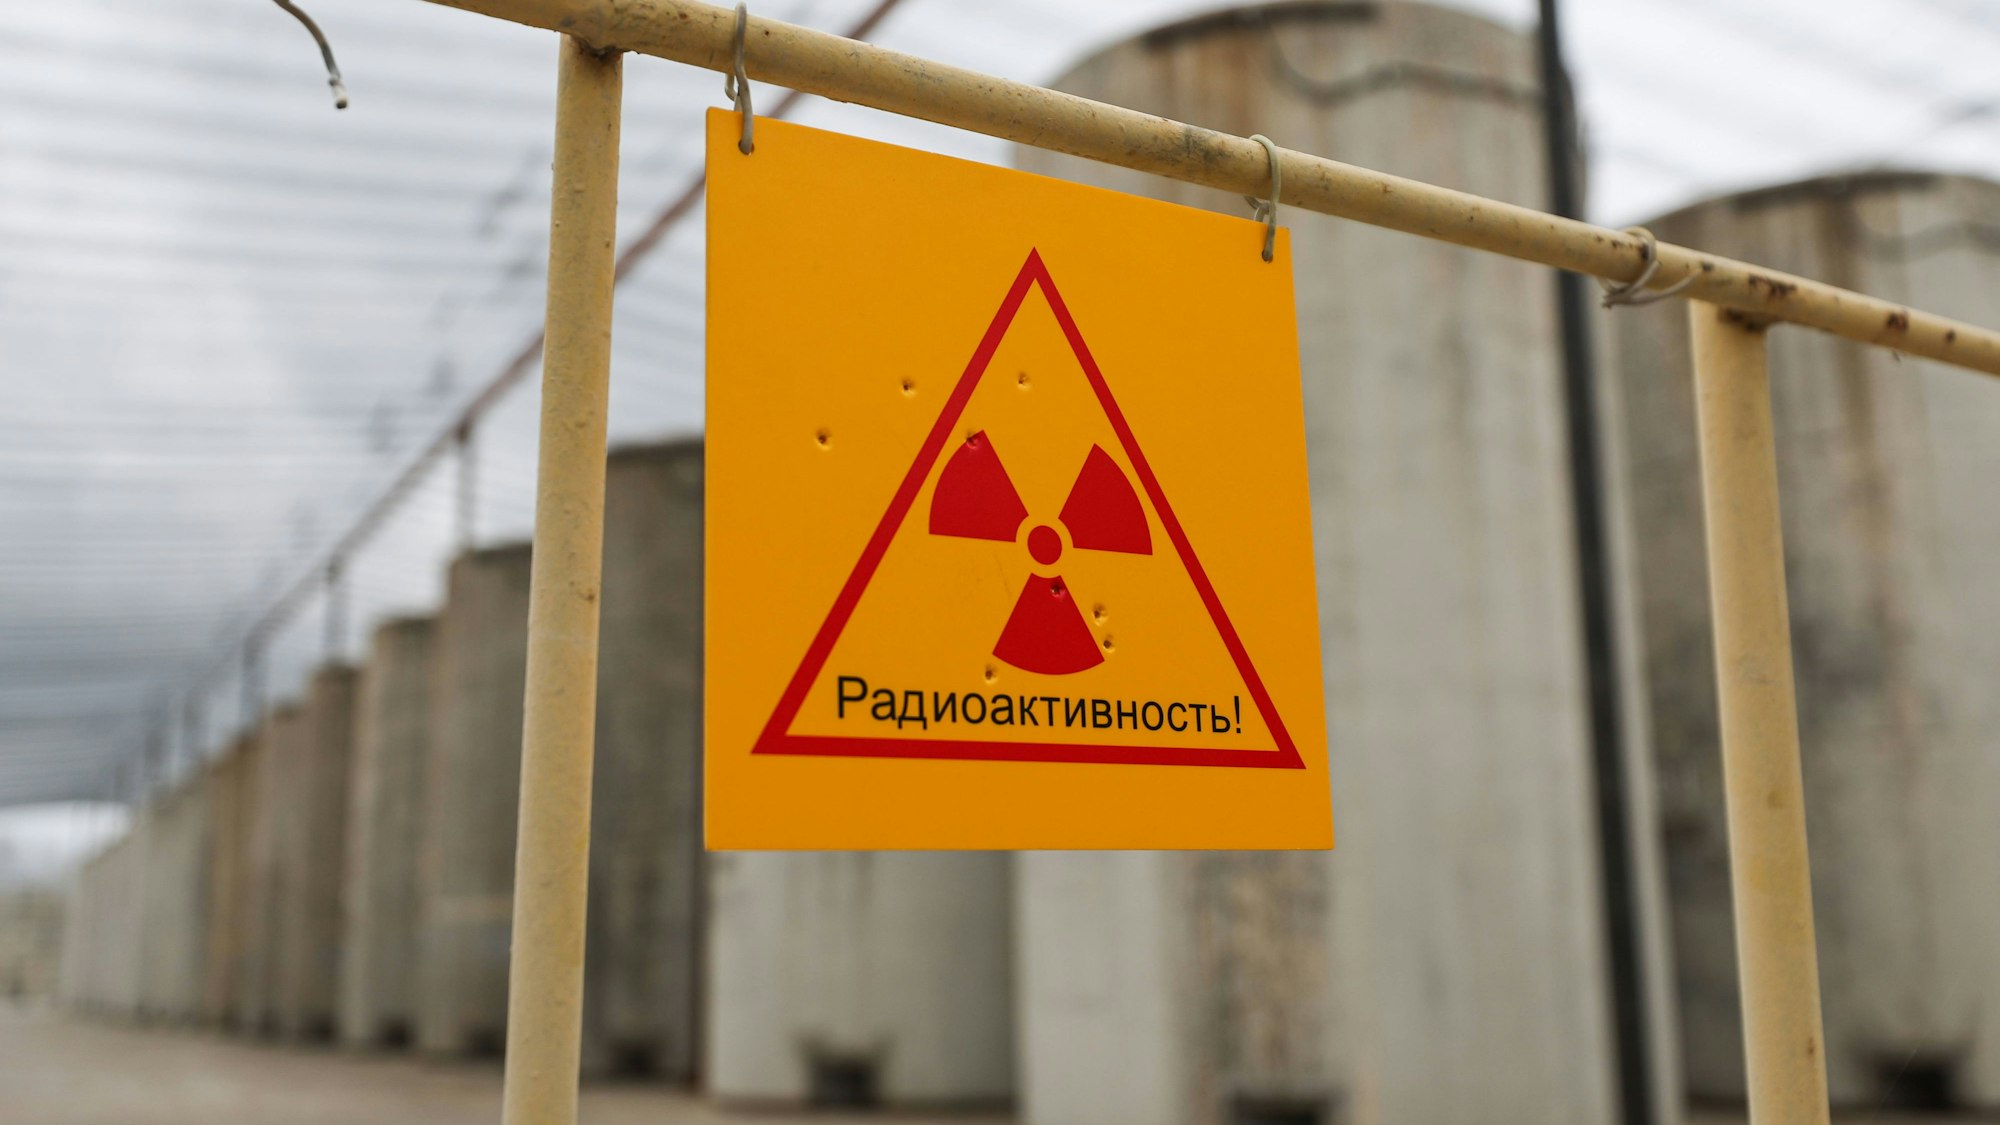 Ein Bild der russischen staatlichen Nachrichtenagentur Tass zeigt ein Schild auf dem Gelände des AKW Saporischschja, das vor Radioaktivität warnt. Europas größtes Atomkraftwerk bezieht sein Kühlwasser aus dem Kachowka-Stausee. (Archivbild)